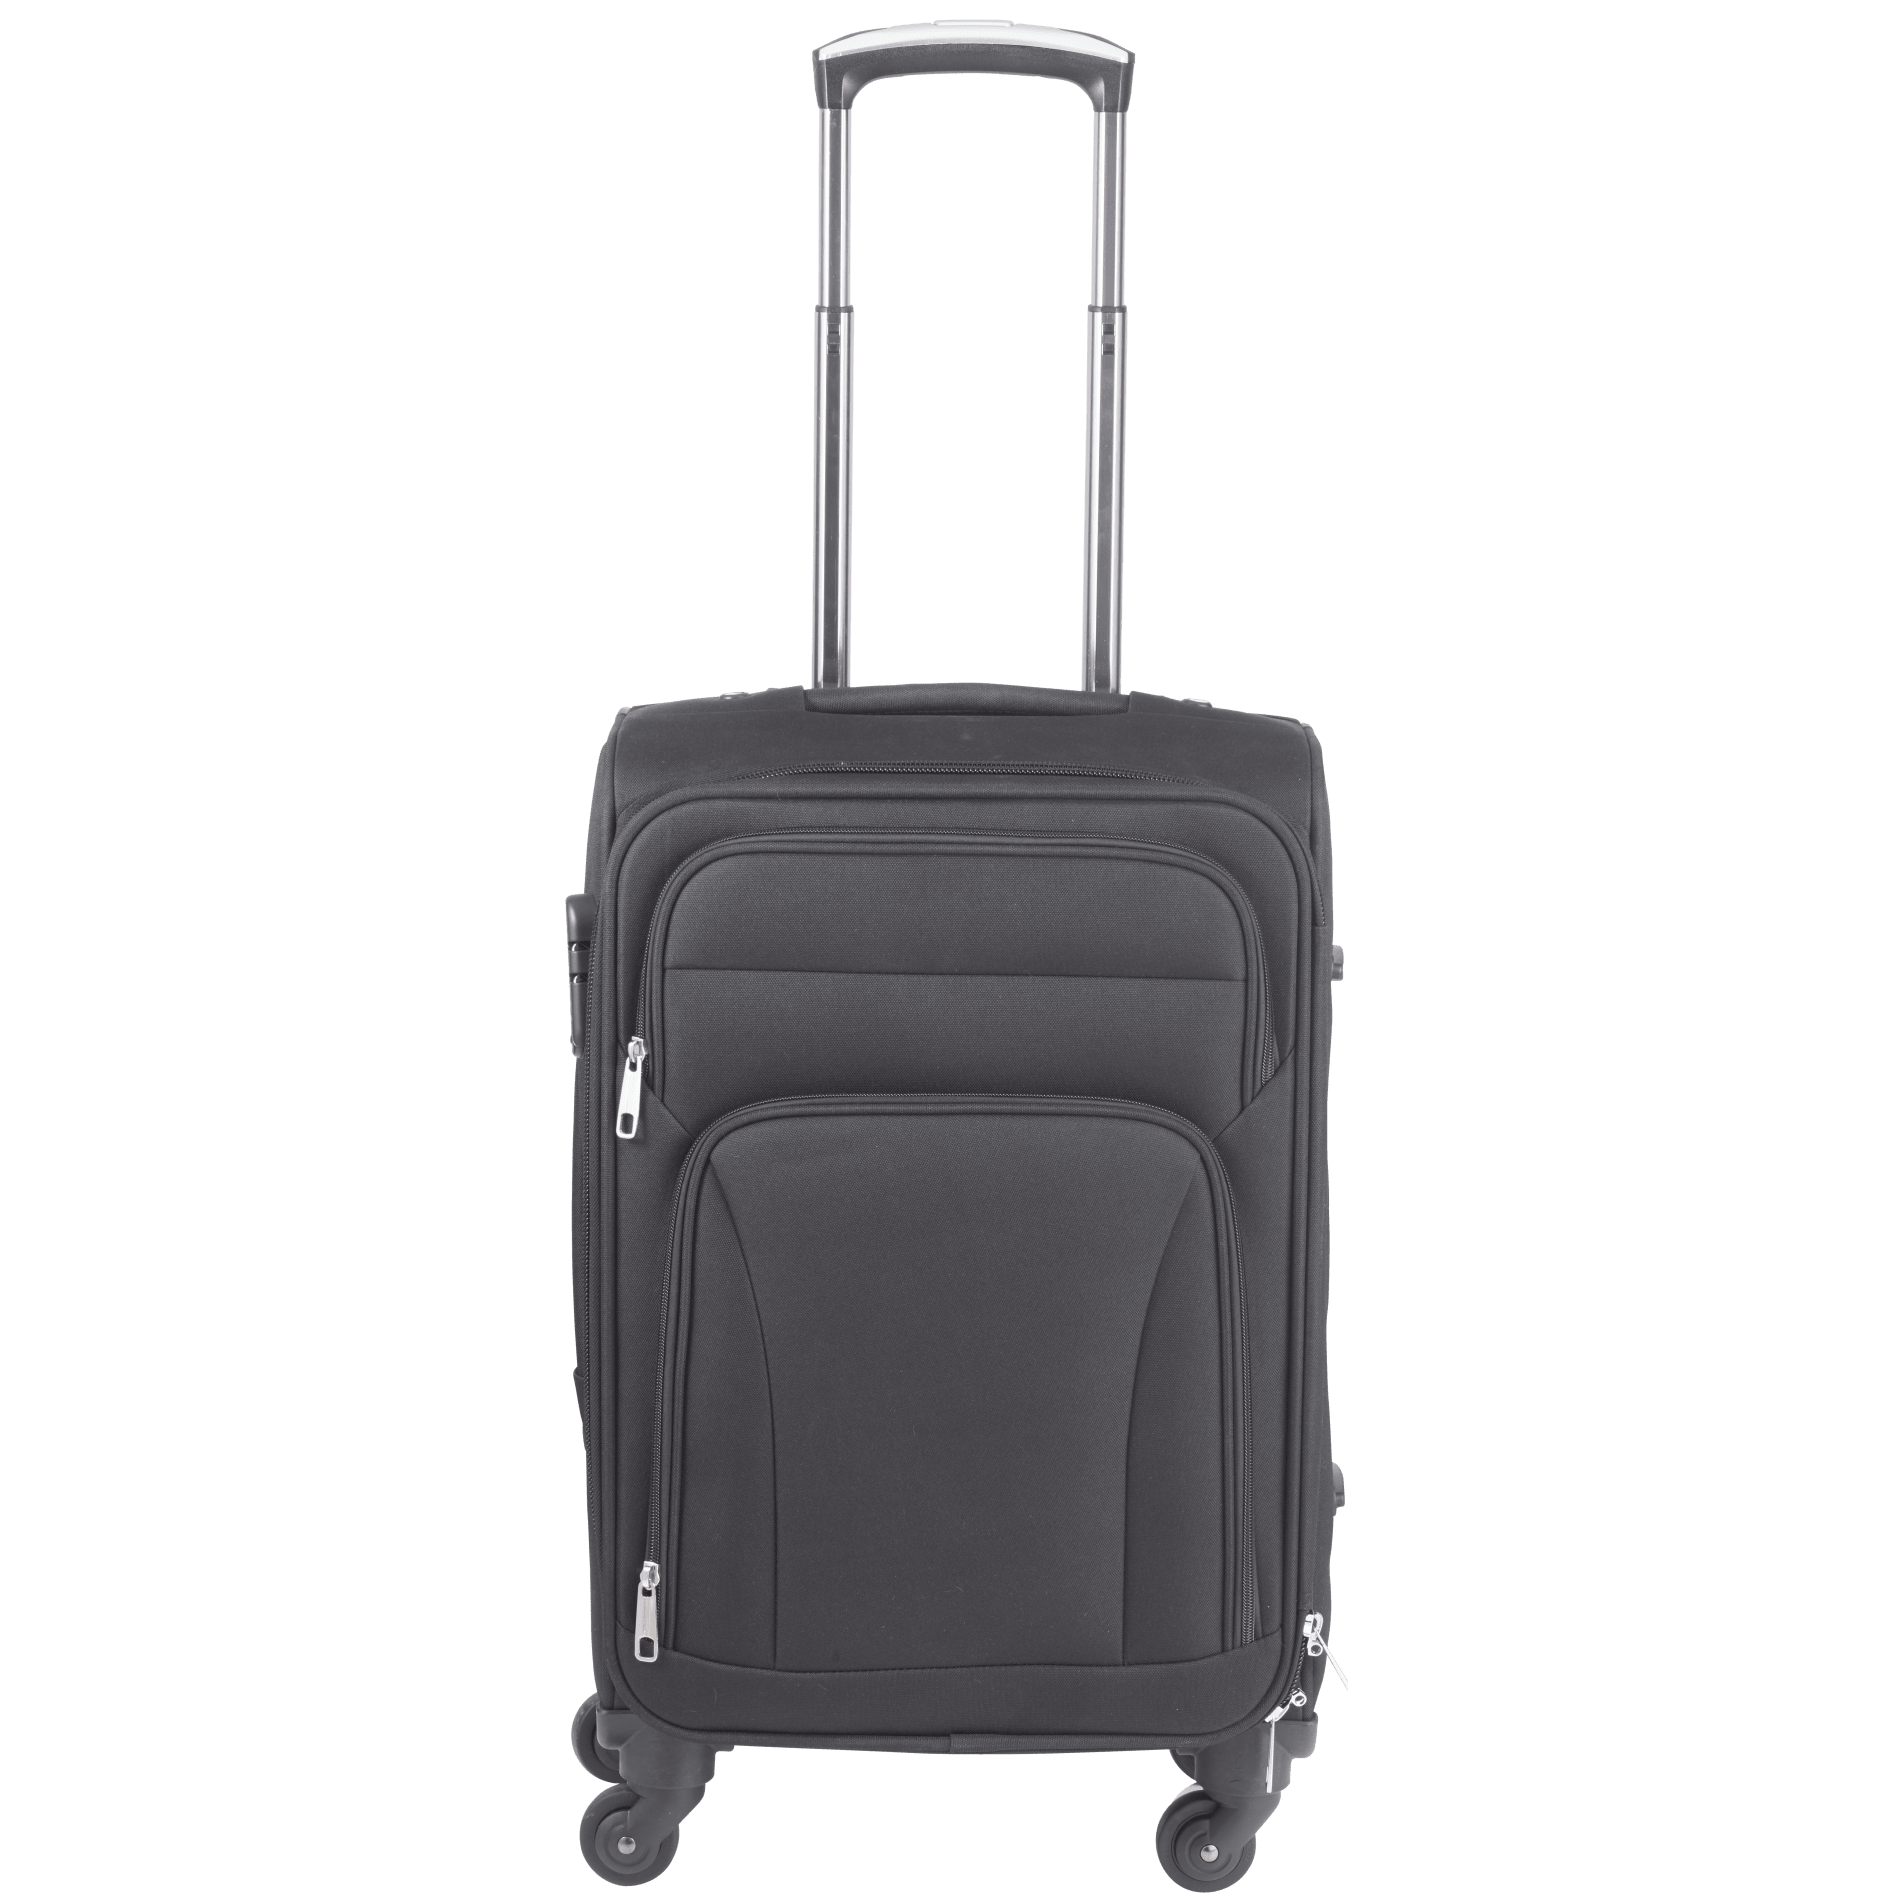 LEEDS 8400-36 - Nomad 21" Upright Luggage